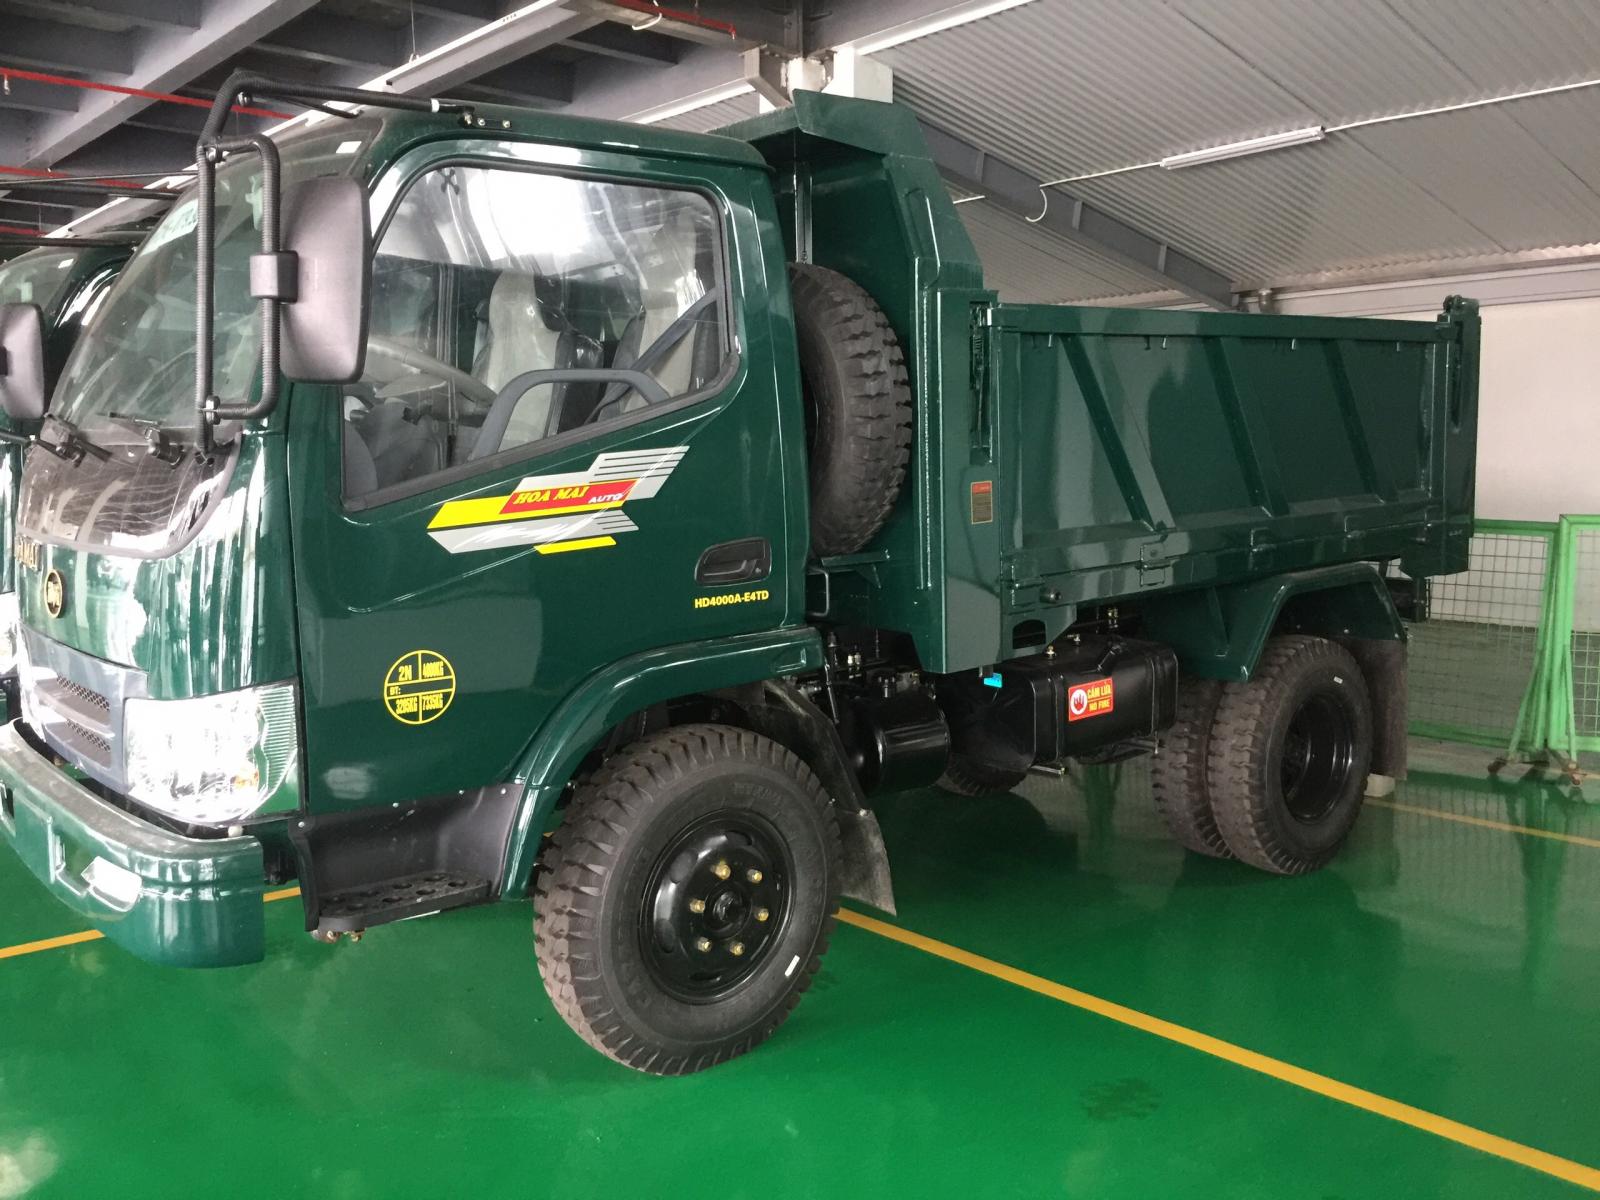 Xe tải 2,5 tấn - dưới 5 tấn 2019 - Bán xe Hoa Mai Ben 3 tấn, 4 tấn tại Hưng yên giá rẻ nhất mọi thời đại